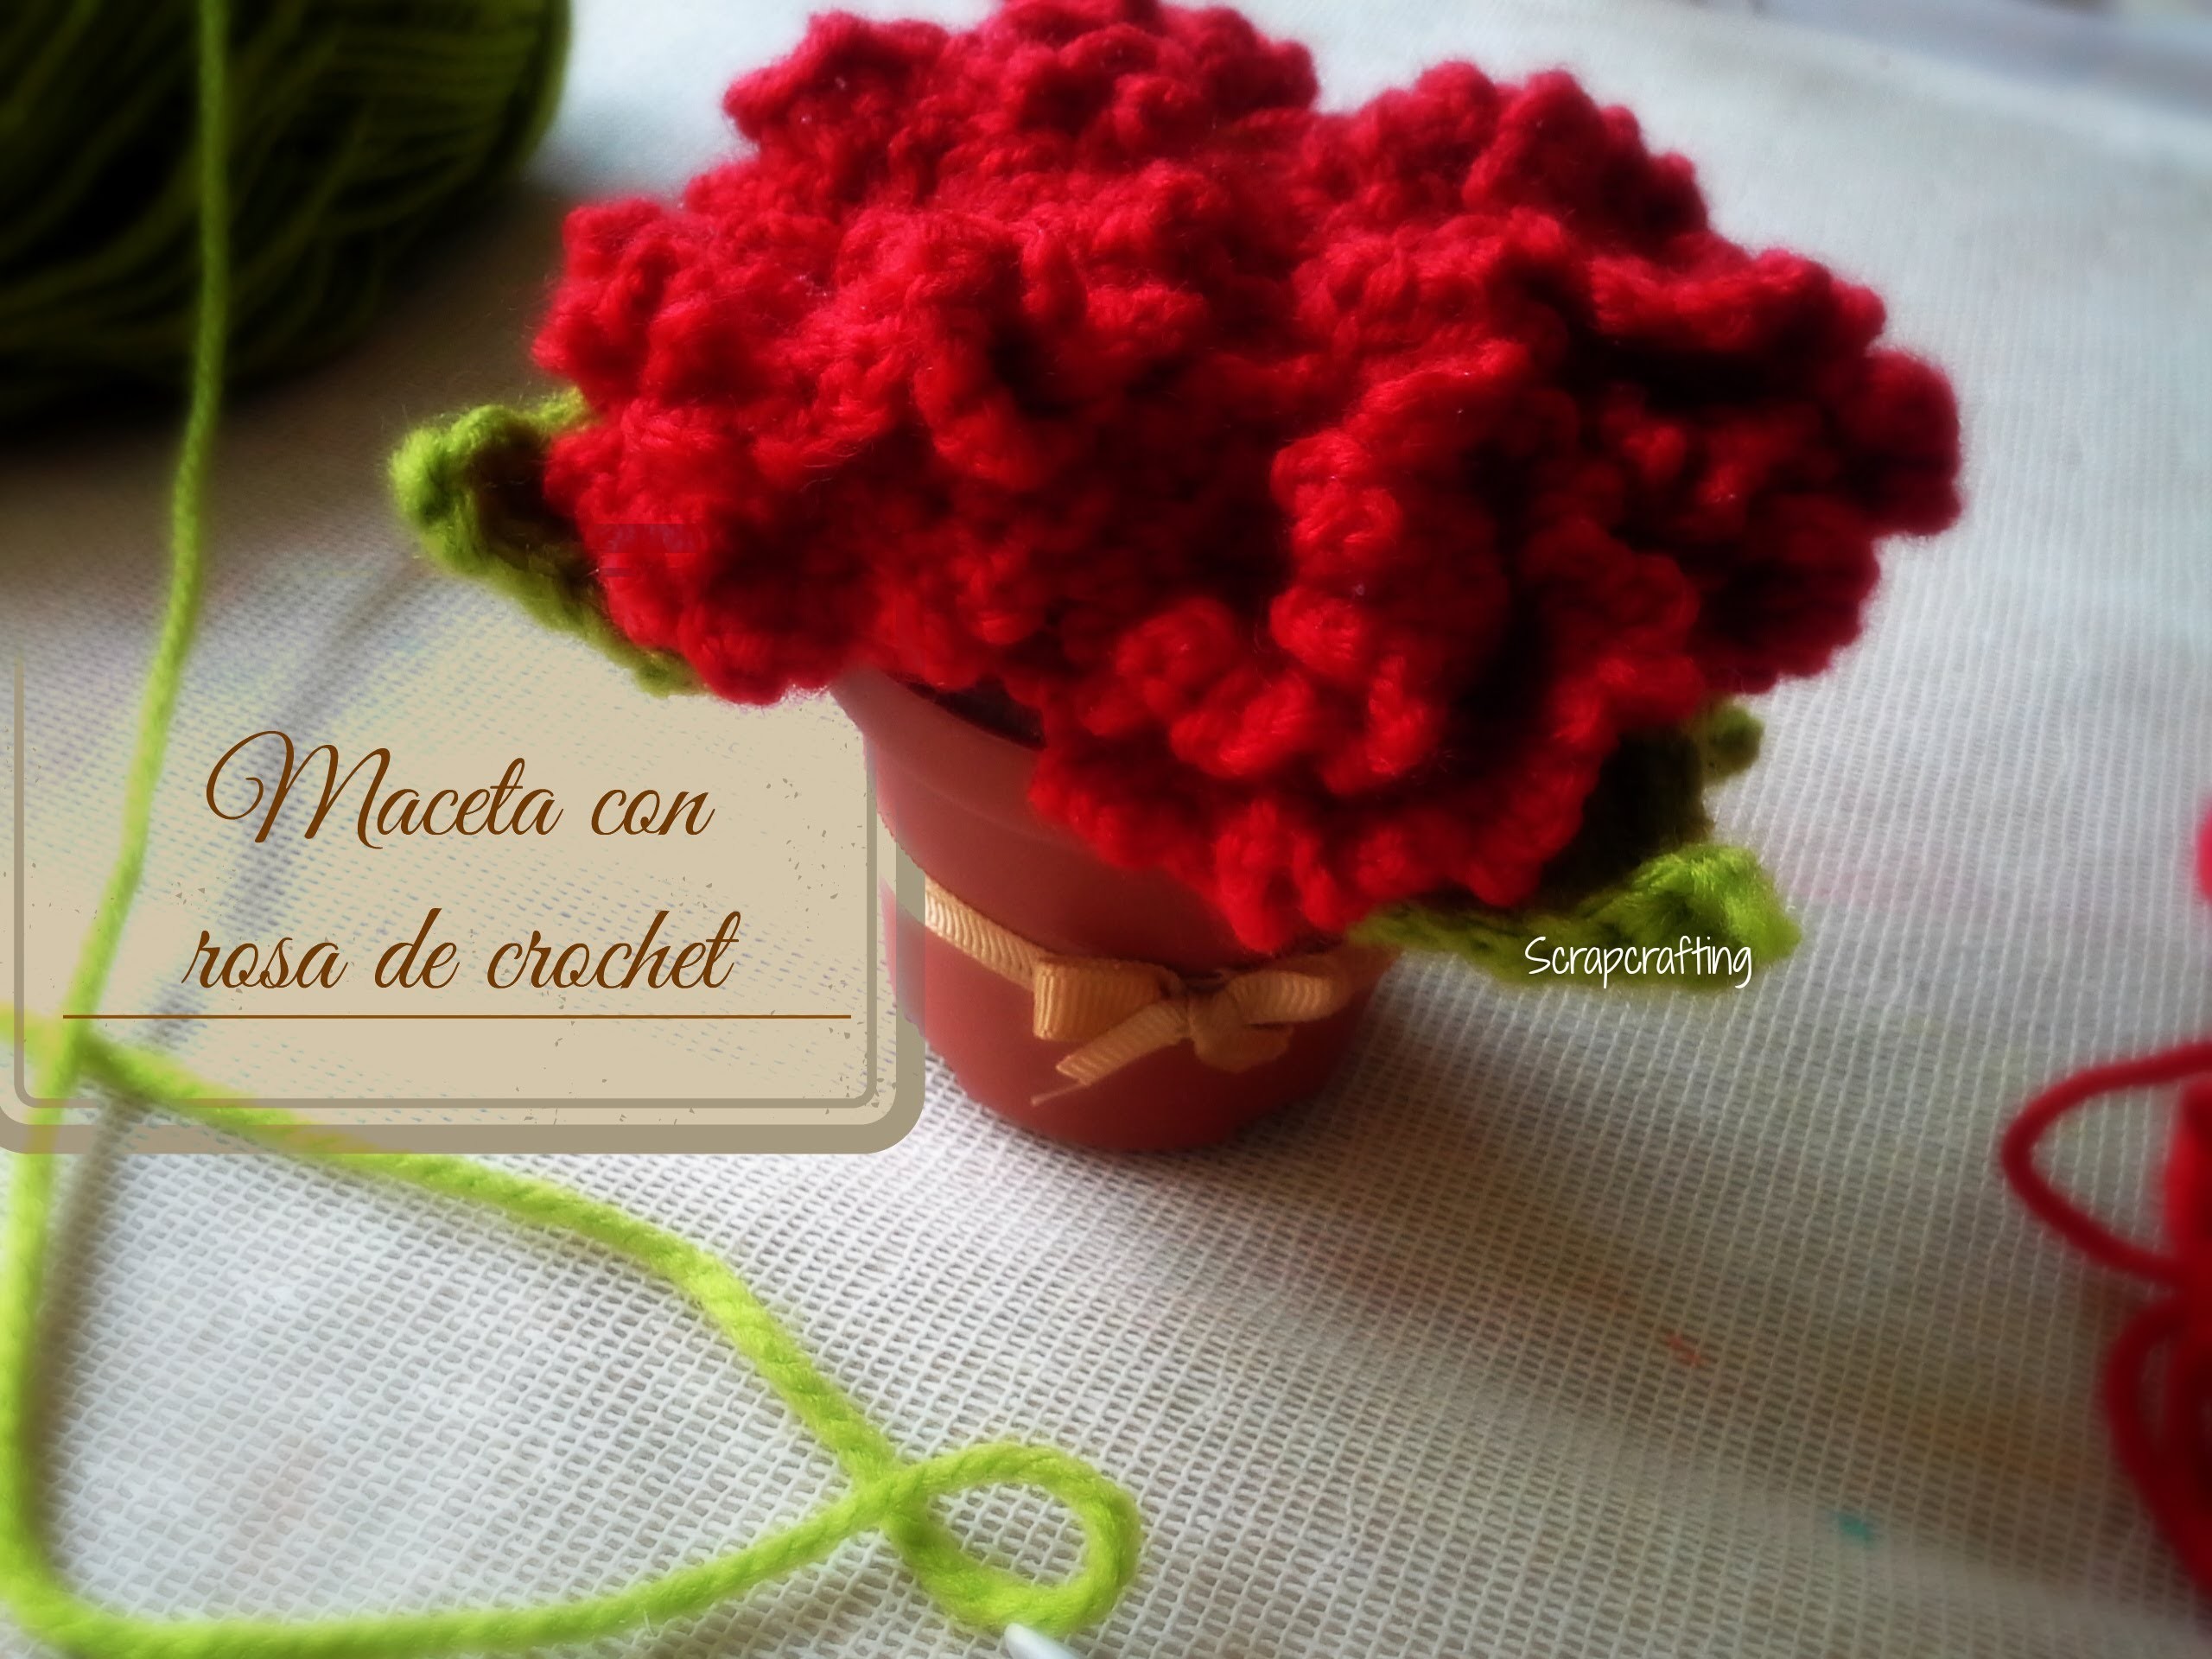 Maceta con rosas de crochet: Día de las madres